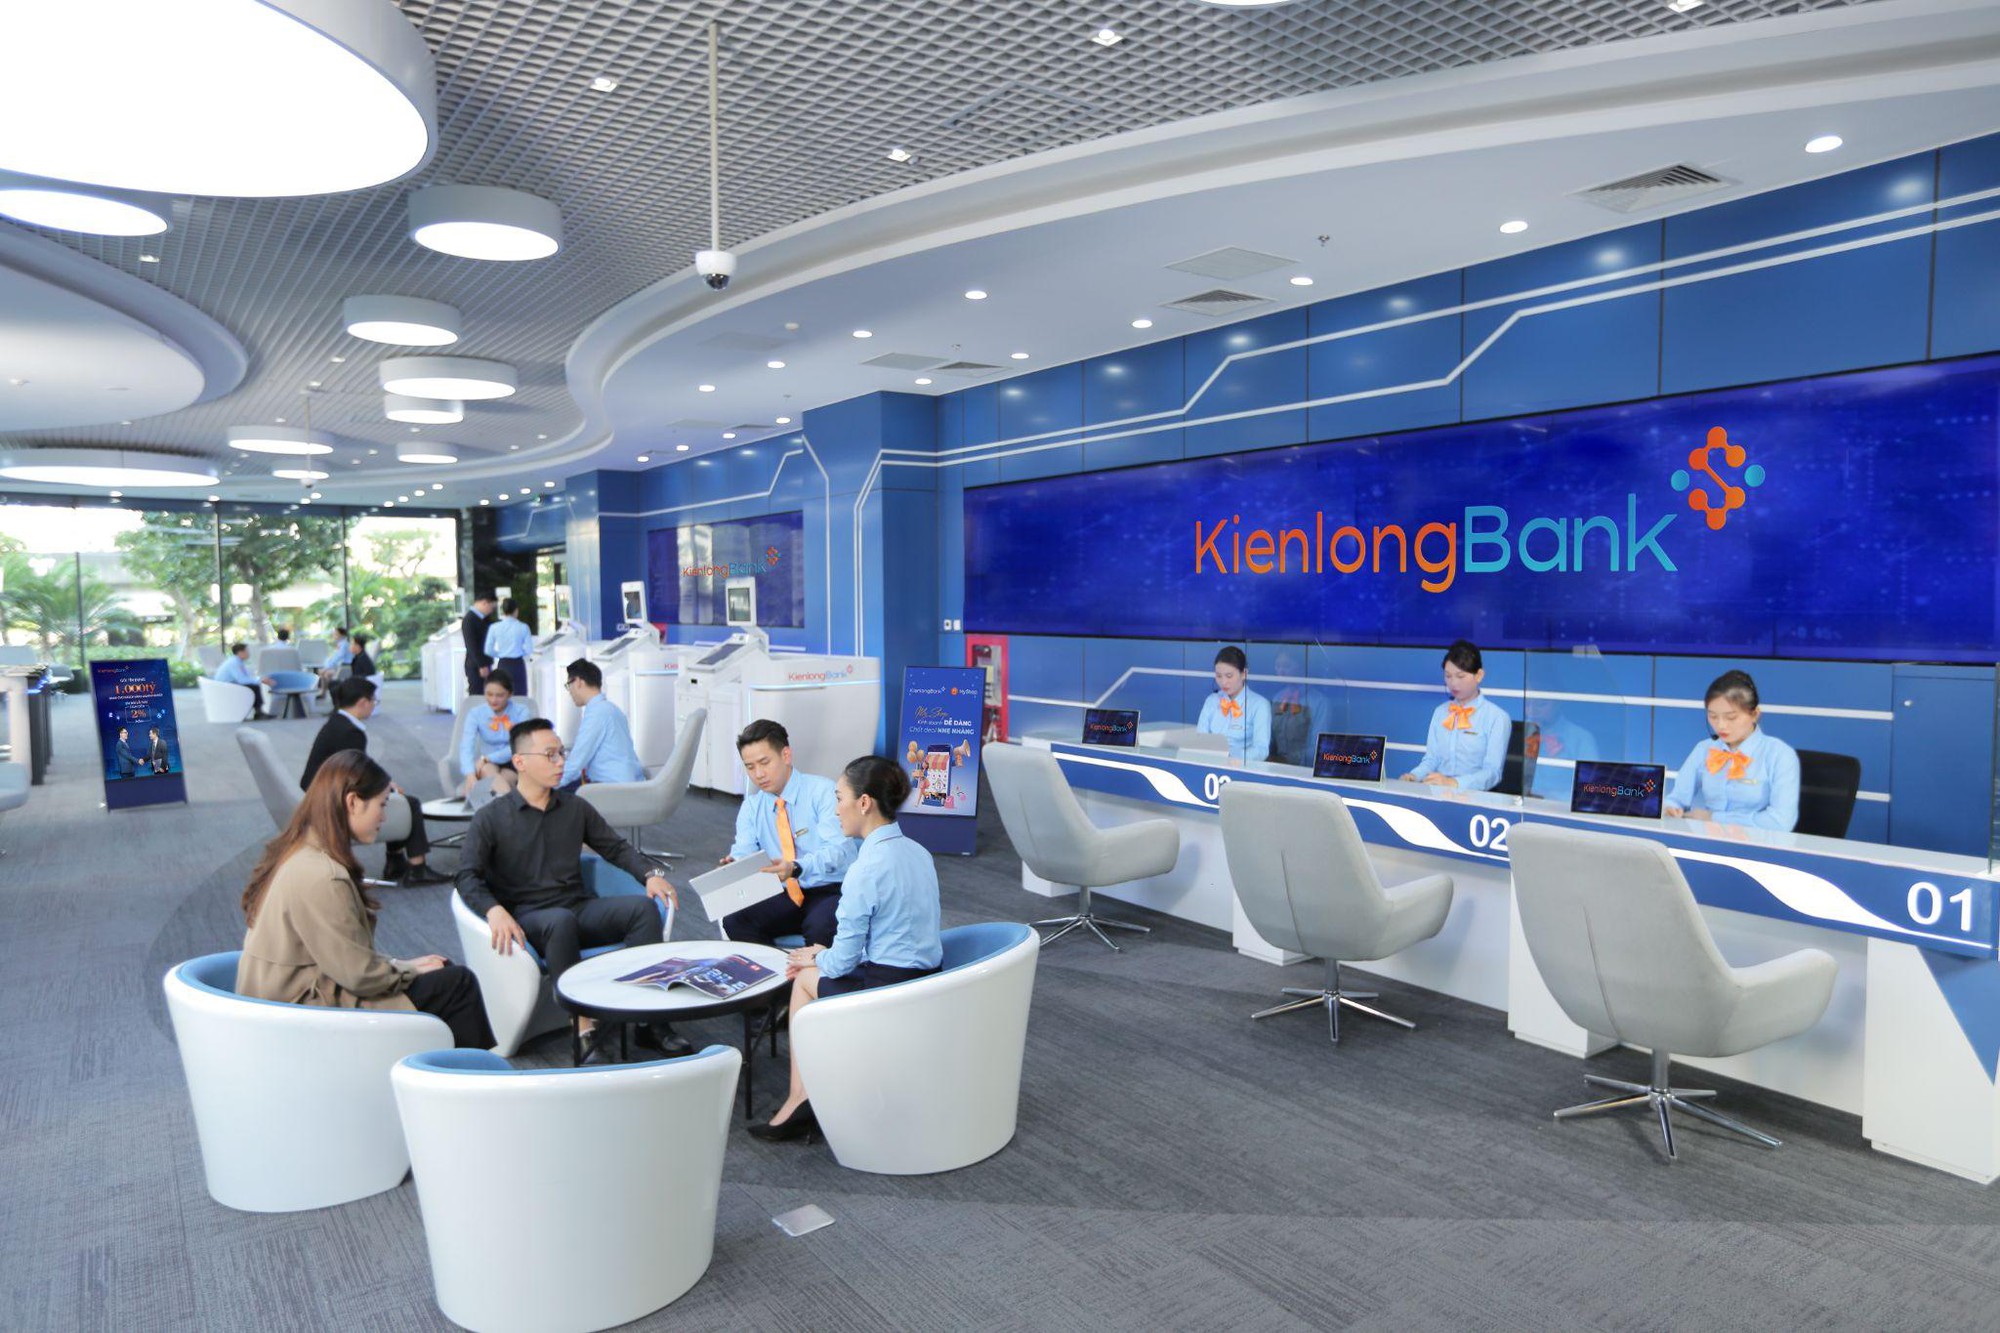 KienlongBank hoàn thành kế hoạch 6 tháng đầu năm, đẩy mạnh số hóa để tăng trưởng - Ảnh 1.